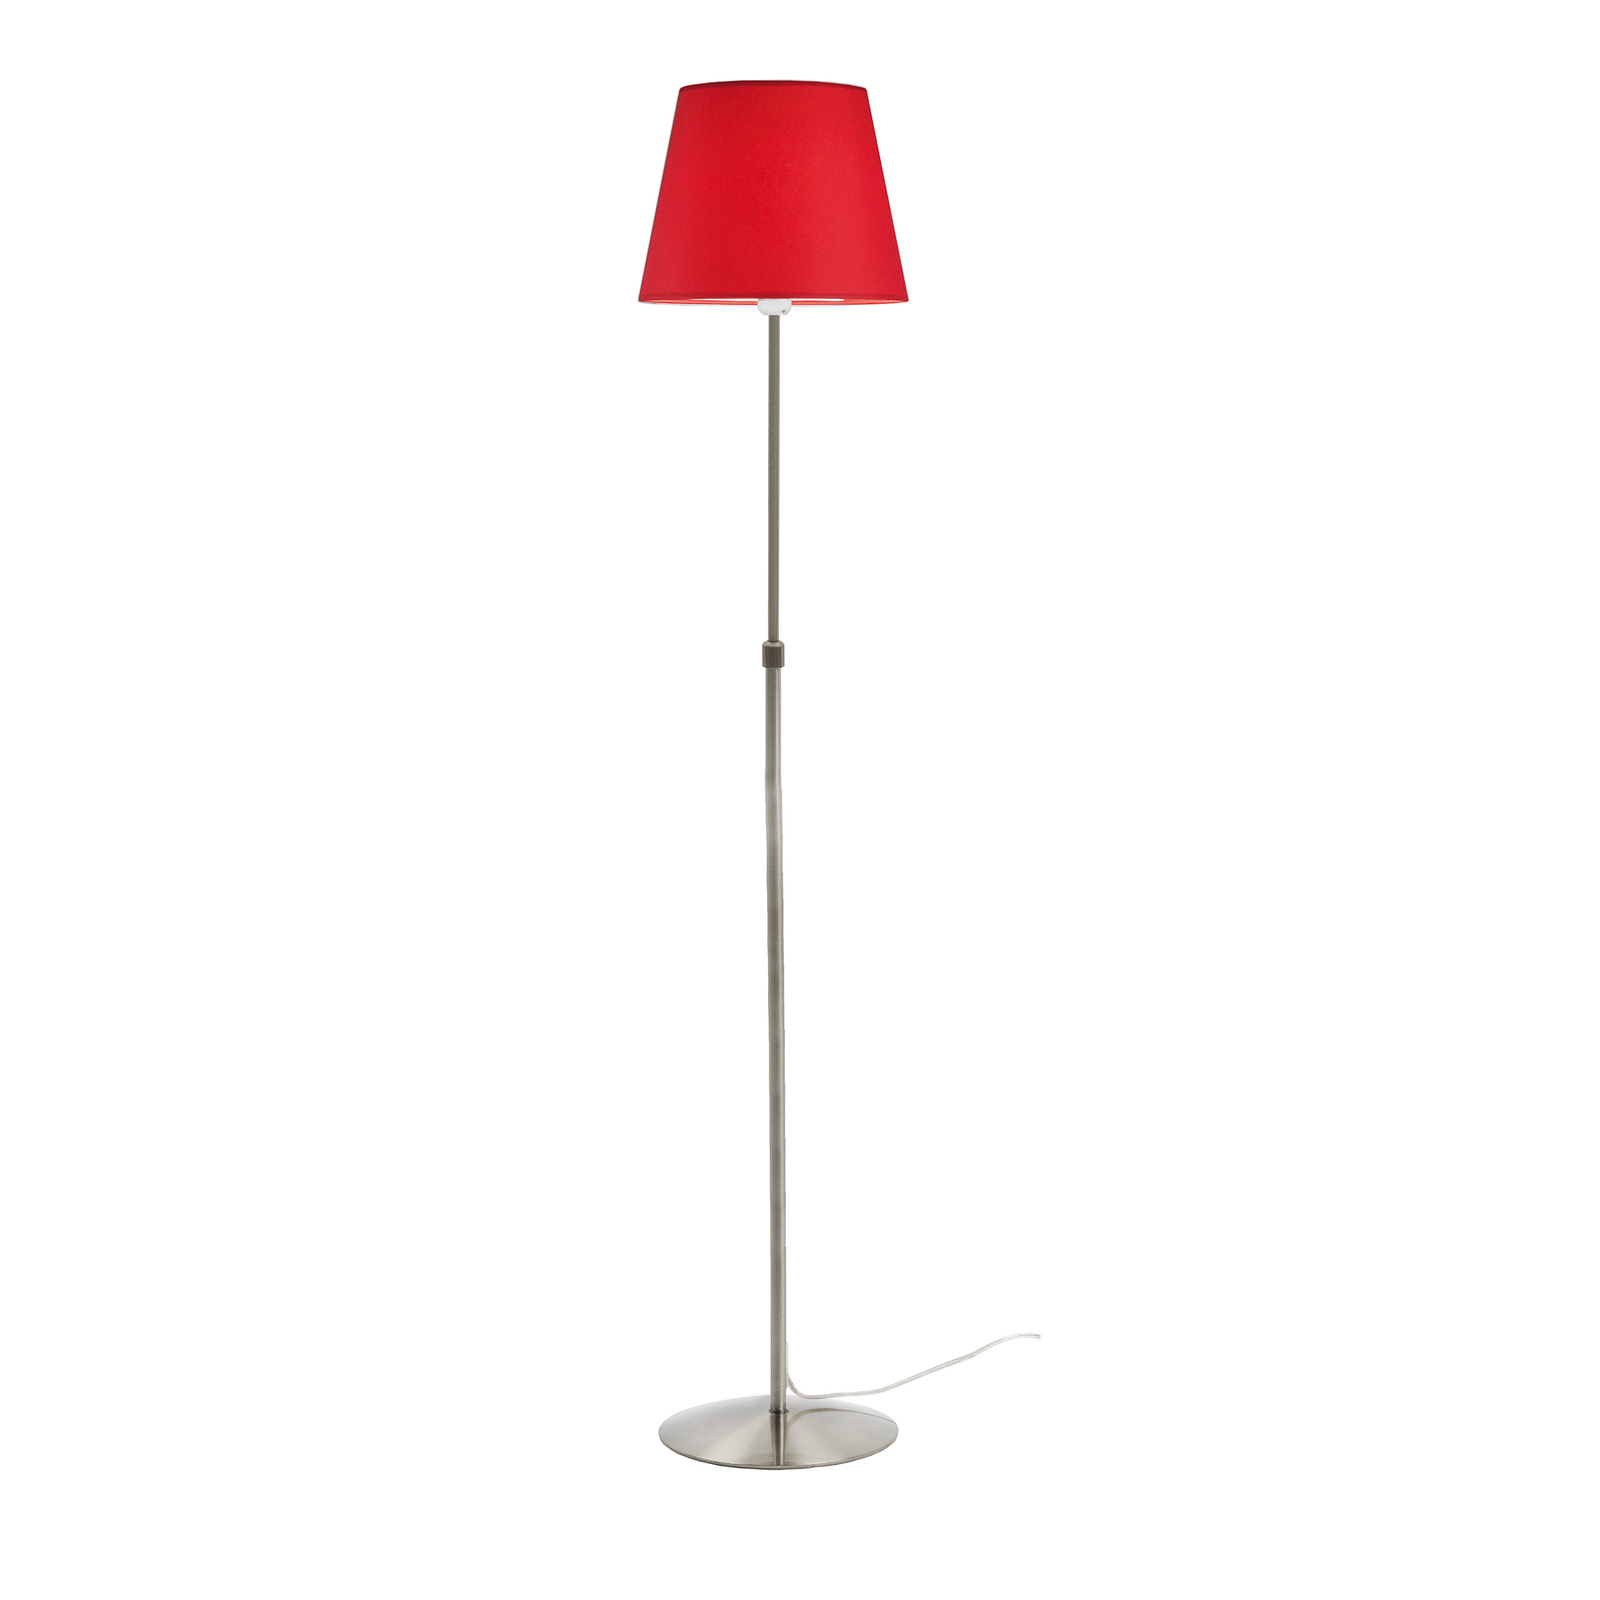 Aluminor Store stojací lampa, hliník/červená